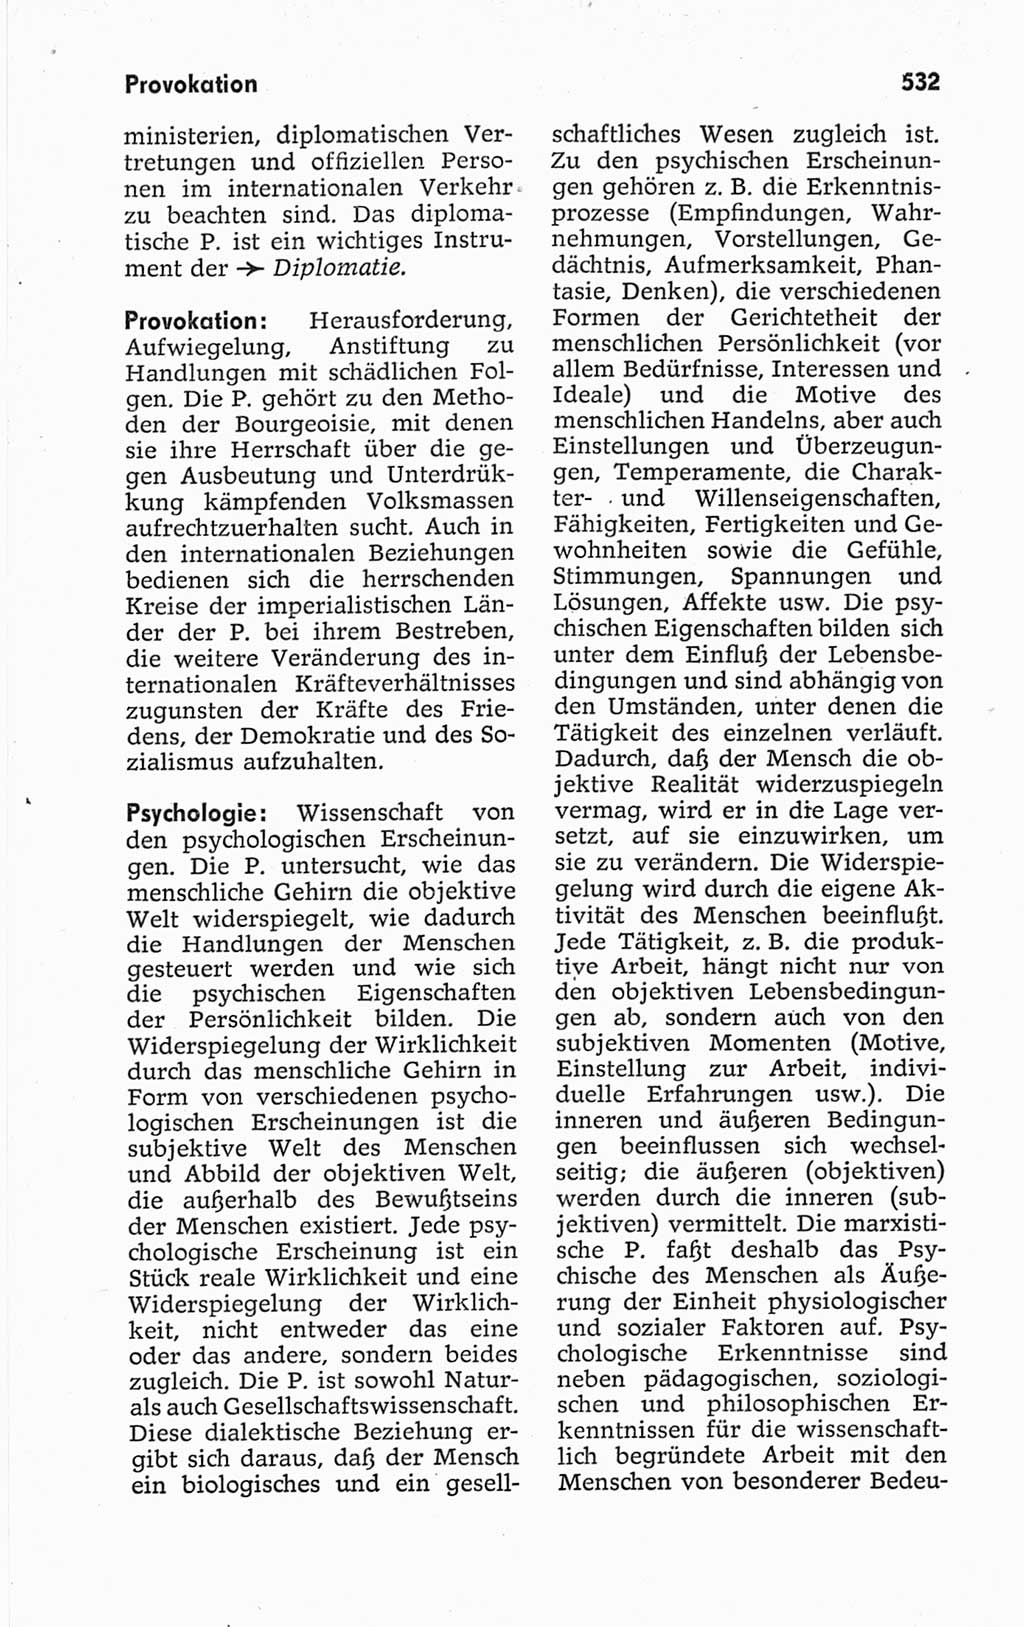 Kleines politisches Wörterbuch [Deutsche Demokratische Republik (DDR)] 1967, Seite 532 (Kl. pol. Wb. DDR 1967, S. 532)